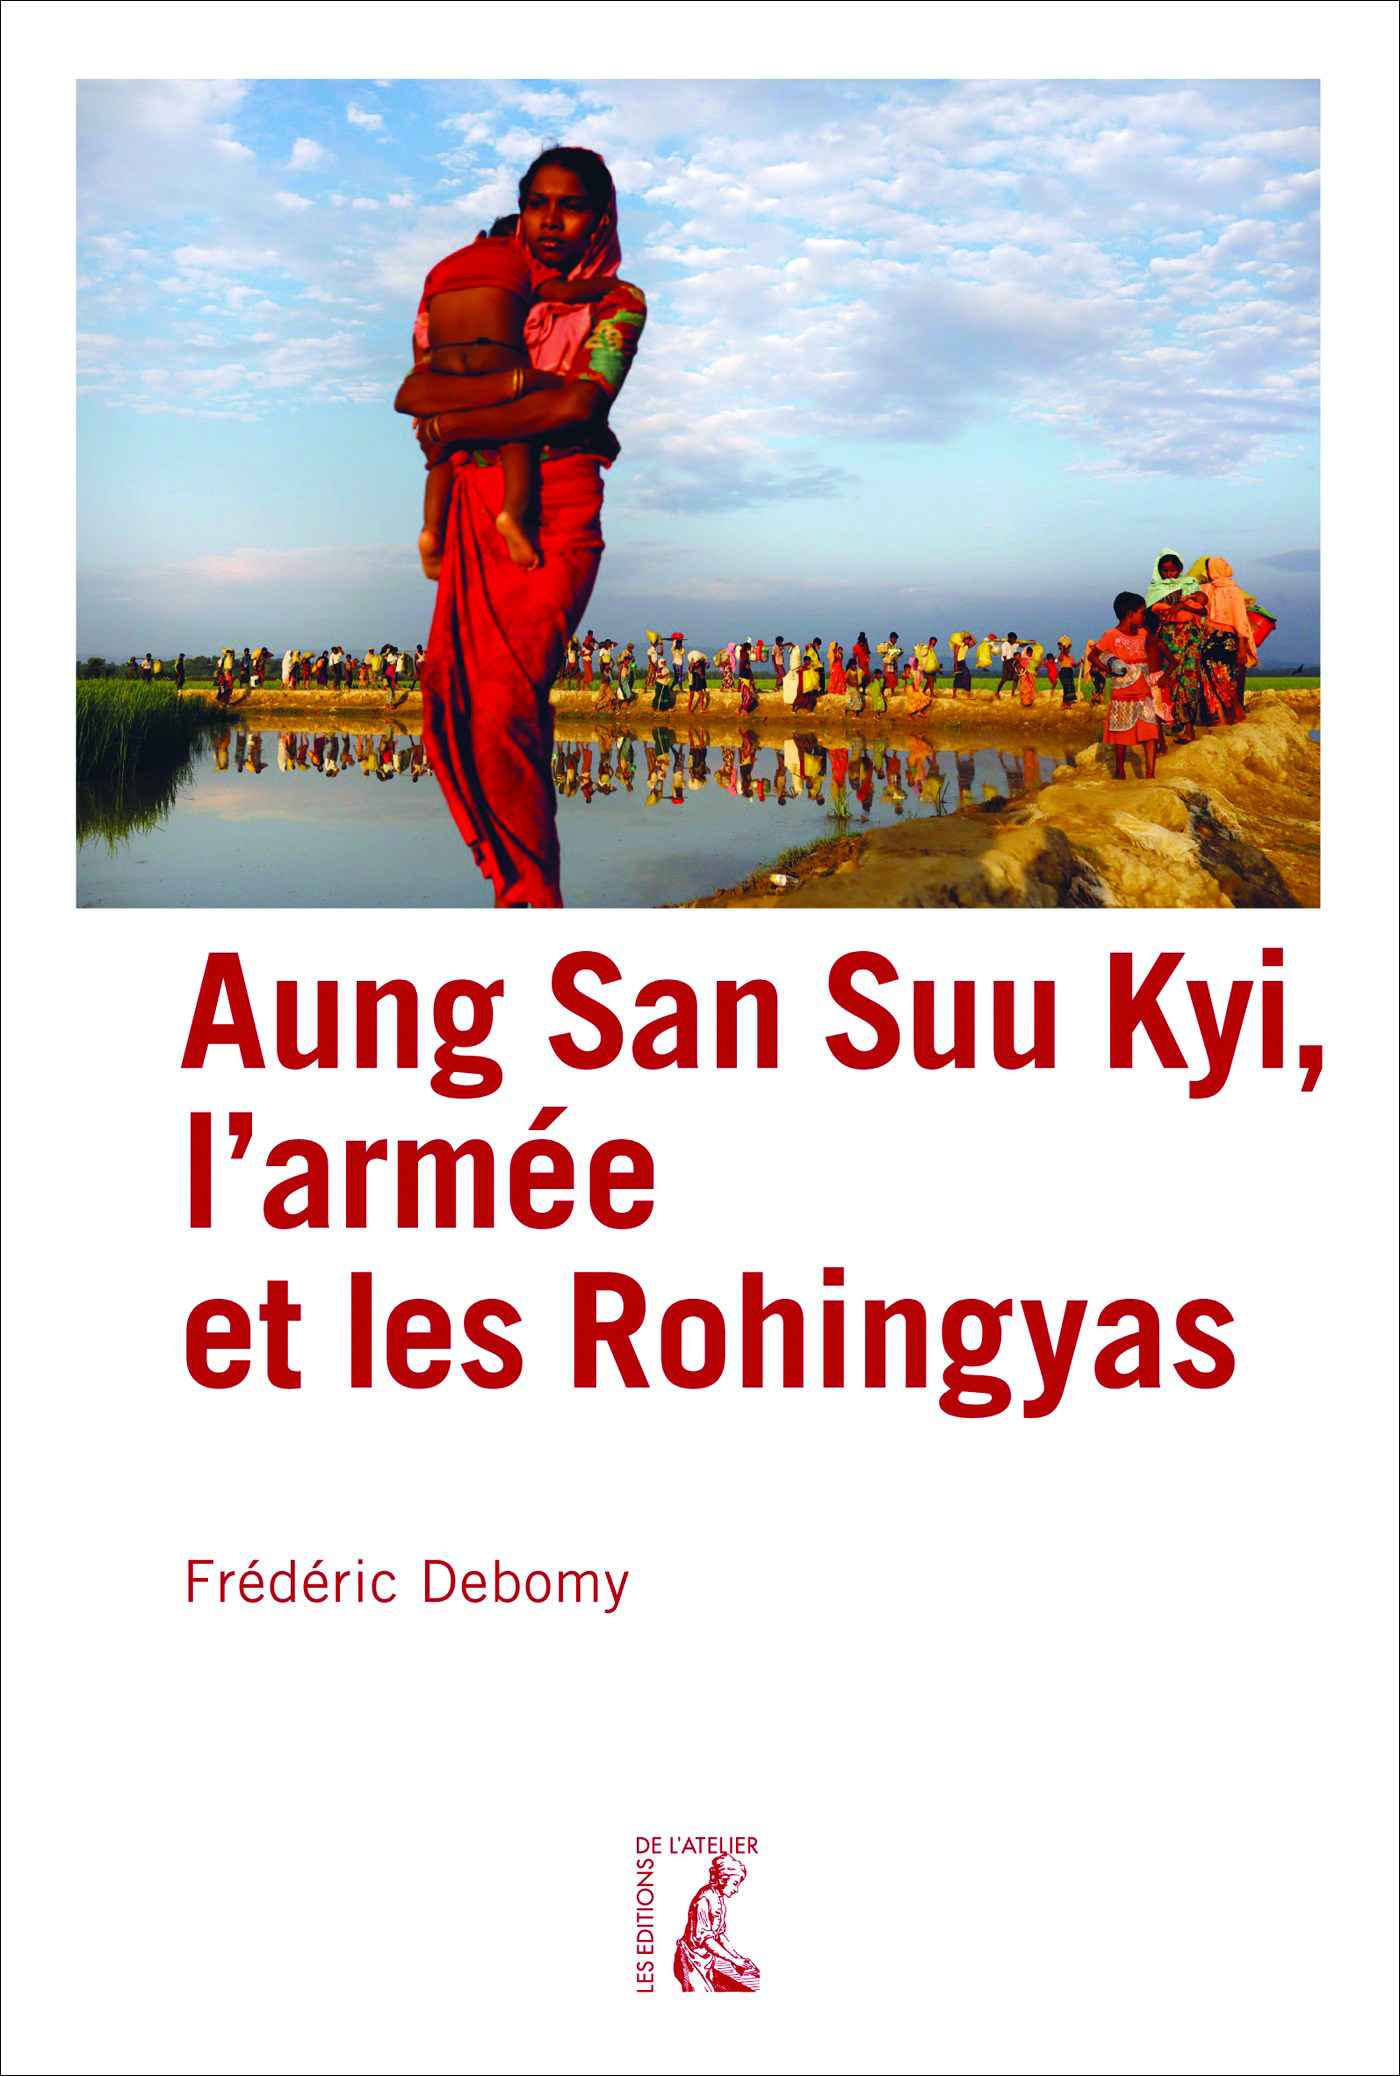 Aung San Suu Kyi, l'armée et les Rohingyas - Frédéric Debomy - Éditions de l'Atelier